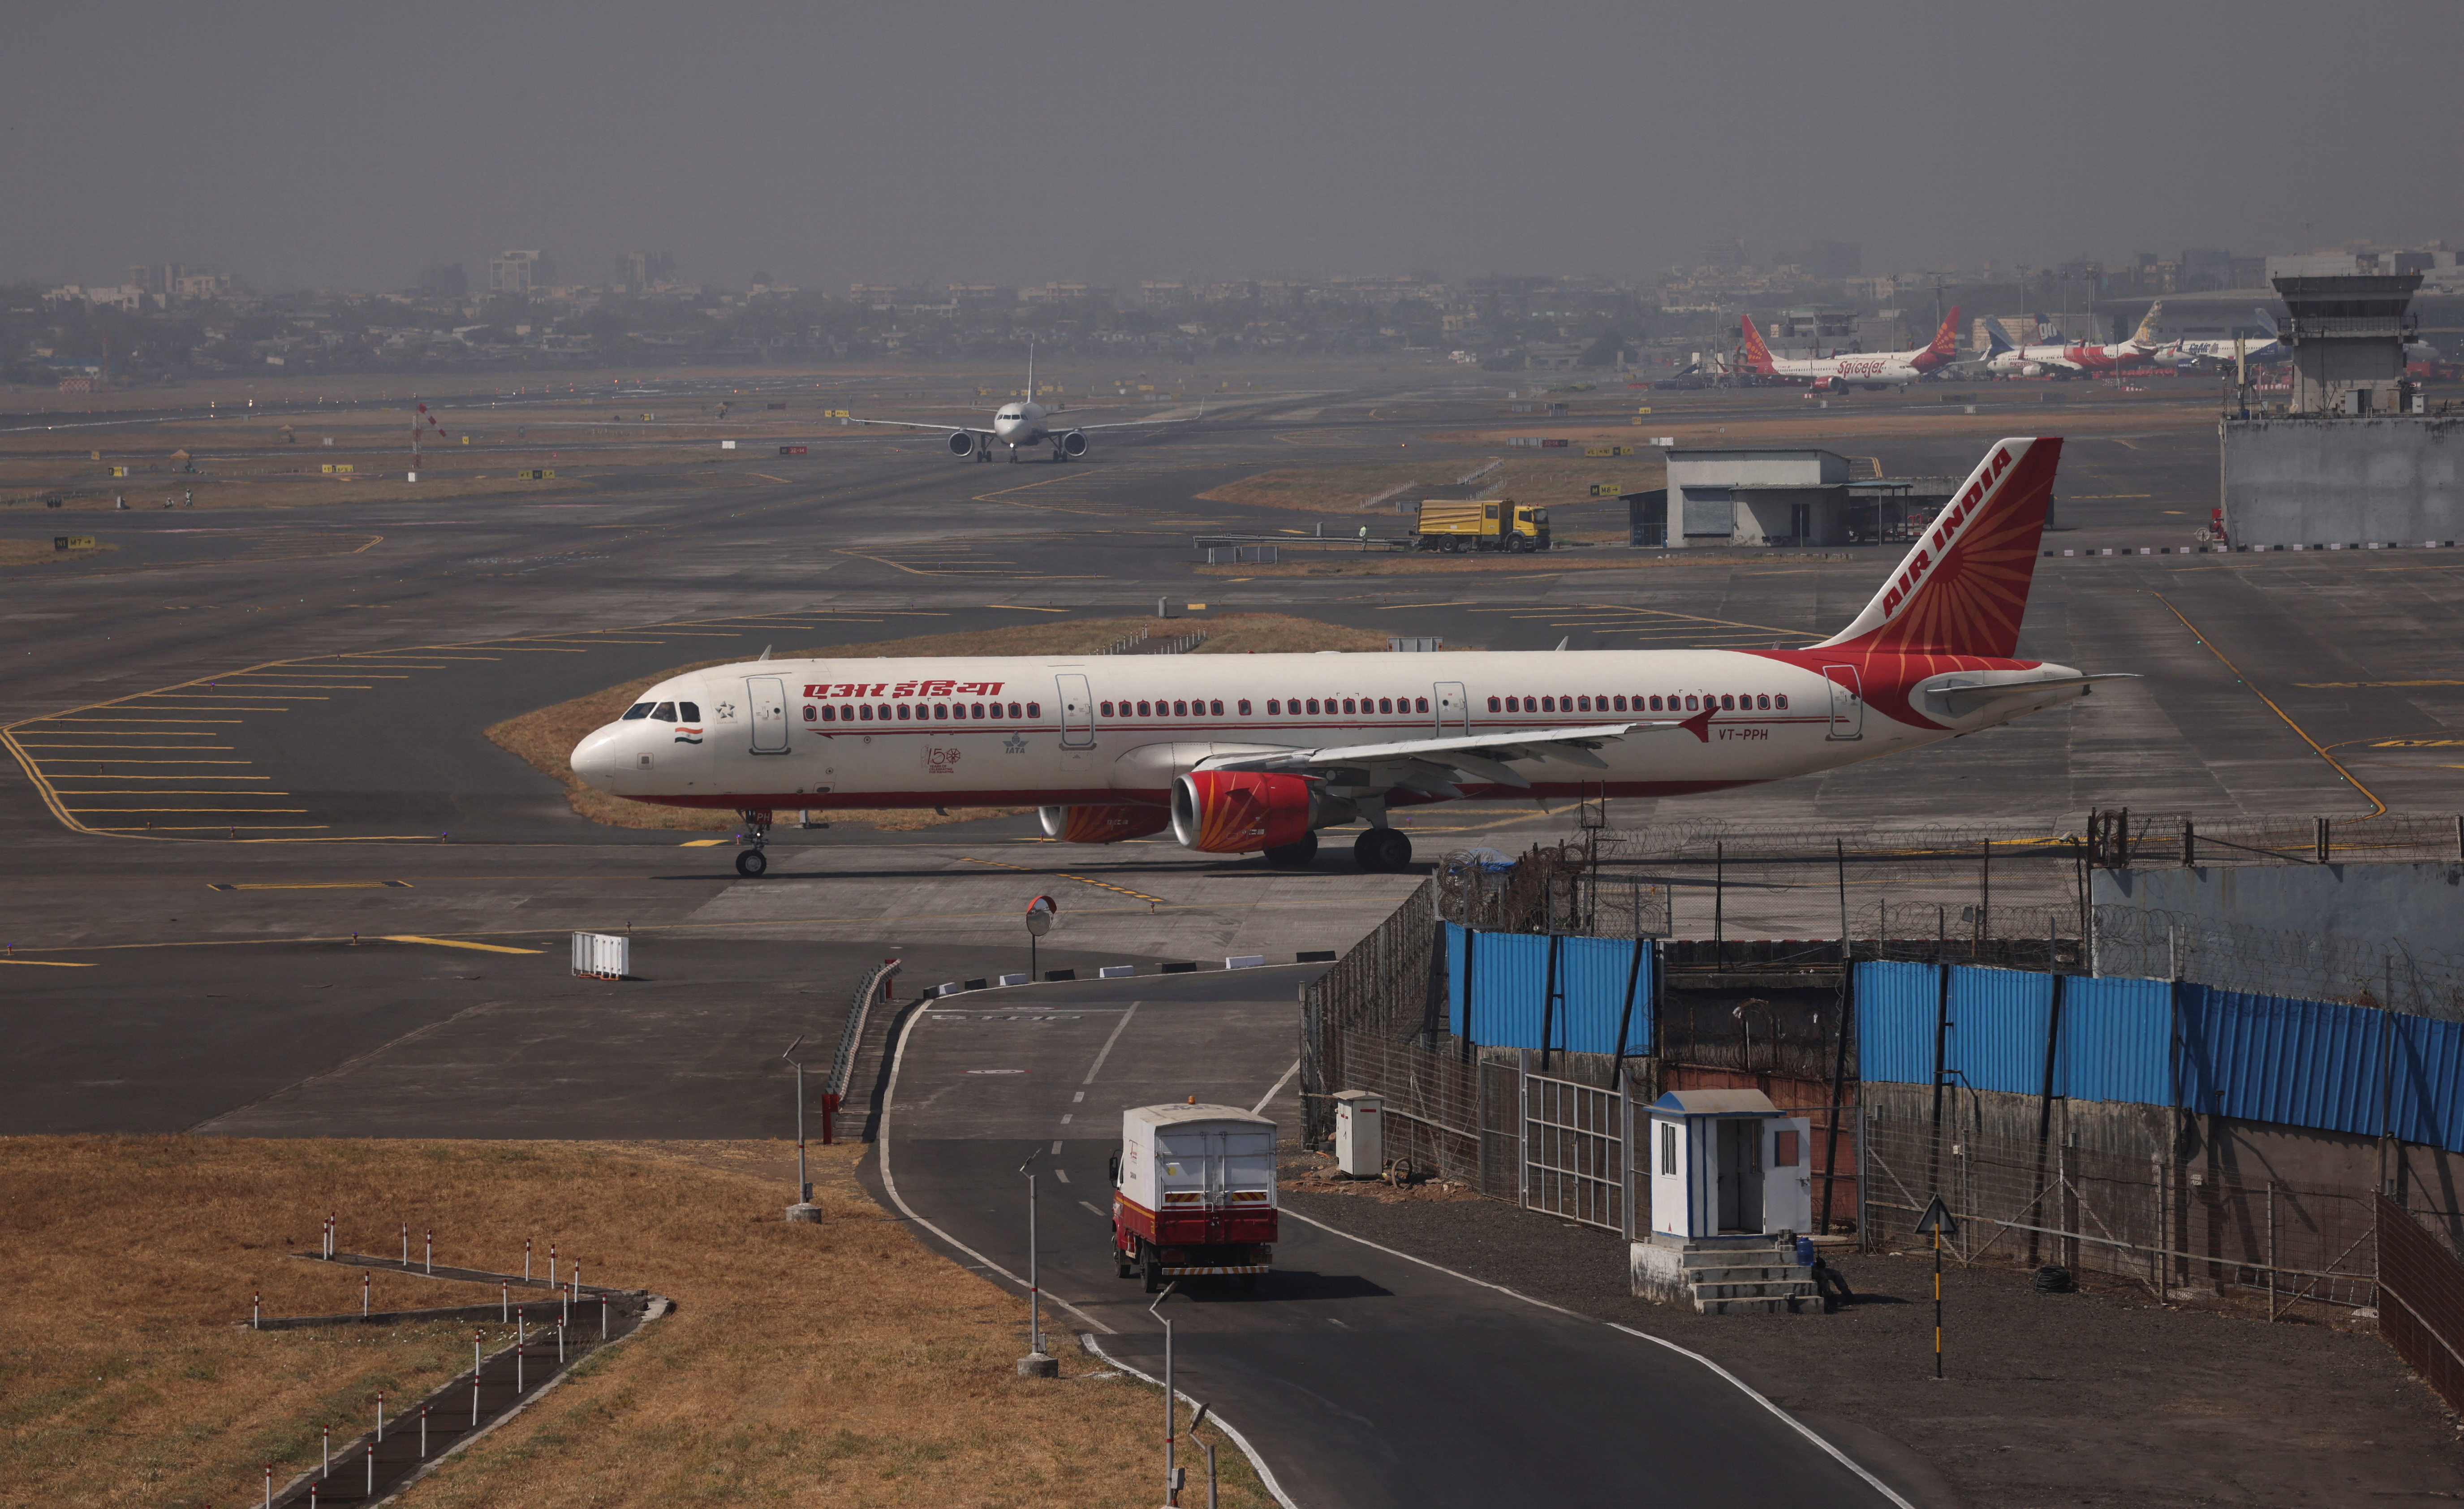 Air India passenger aircraft is seen on the tarmac at Chhatrapati Shivaji International airport in Mumbai